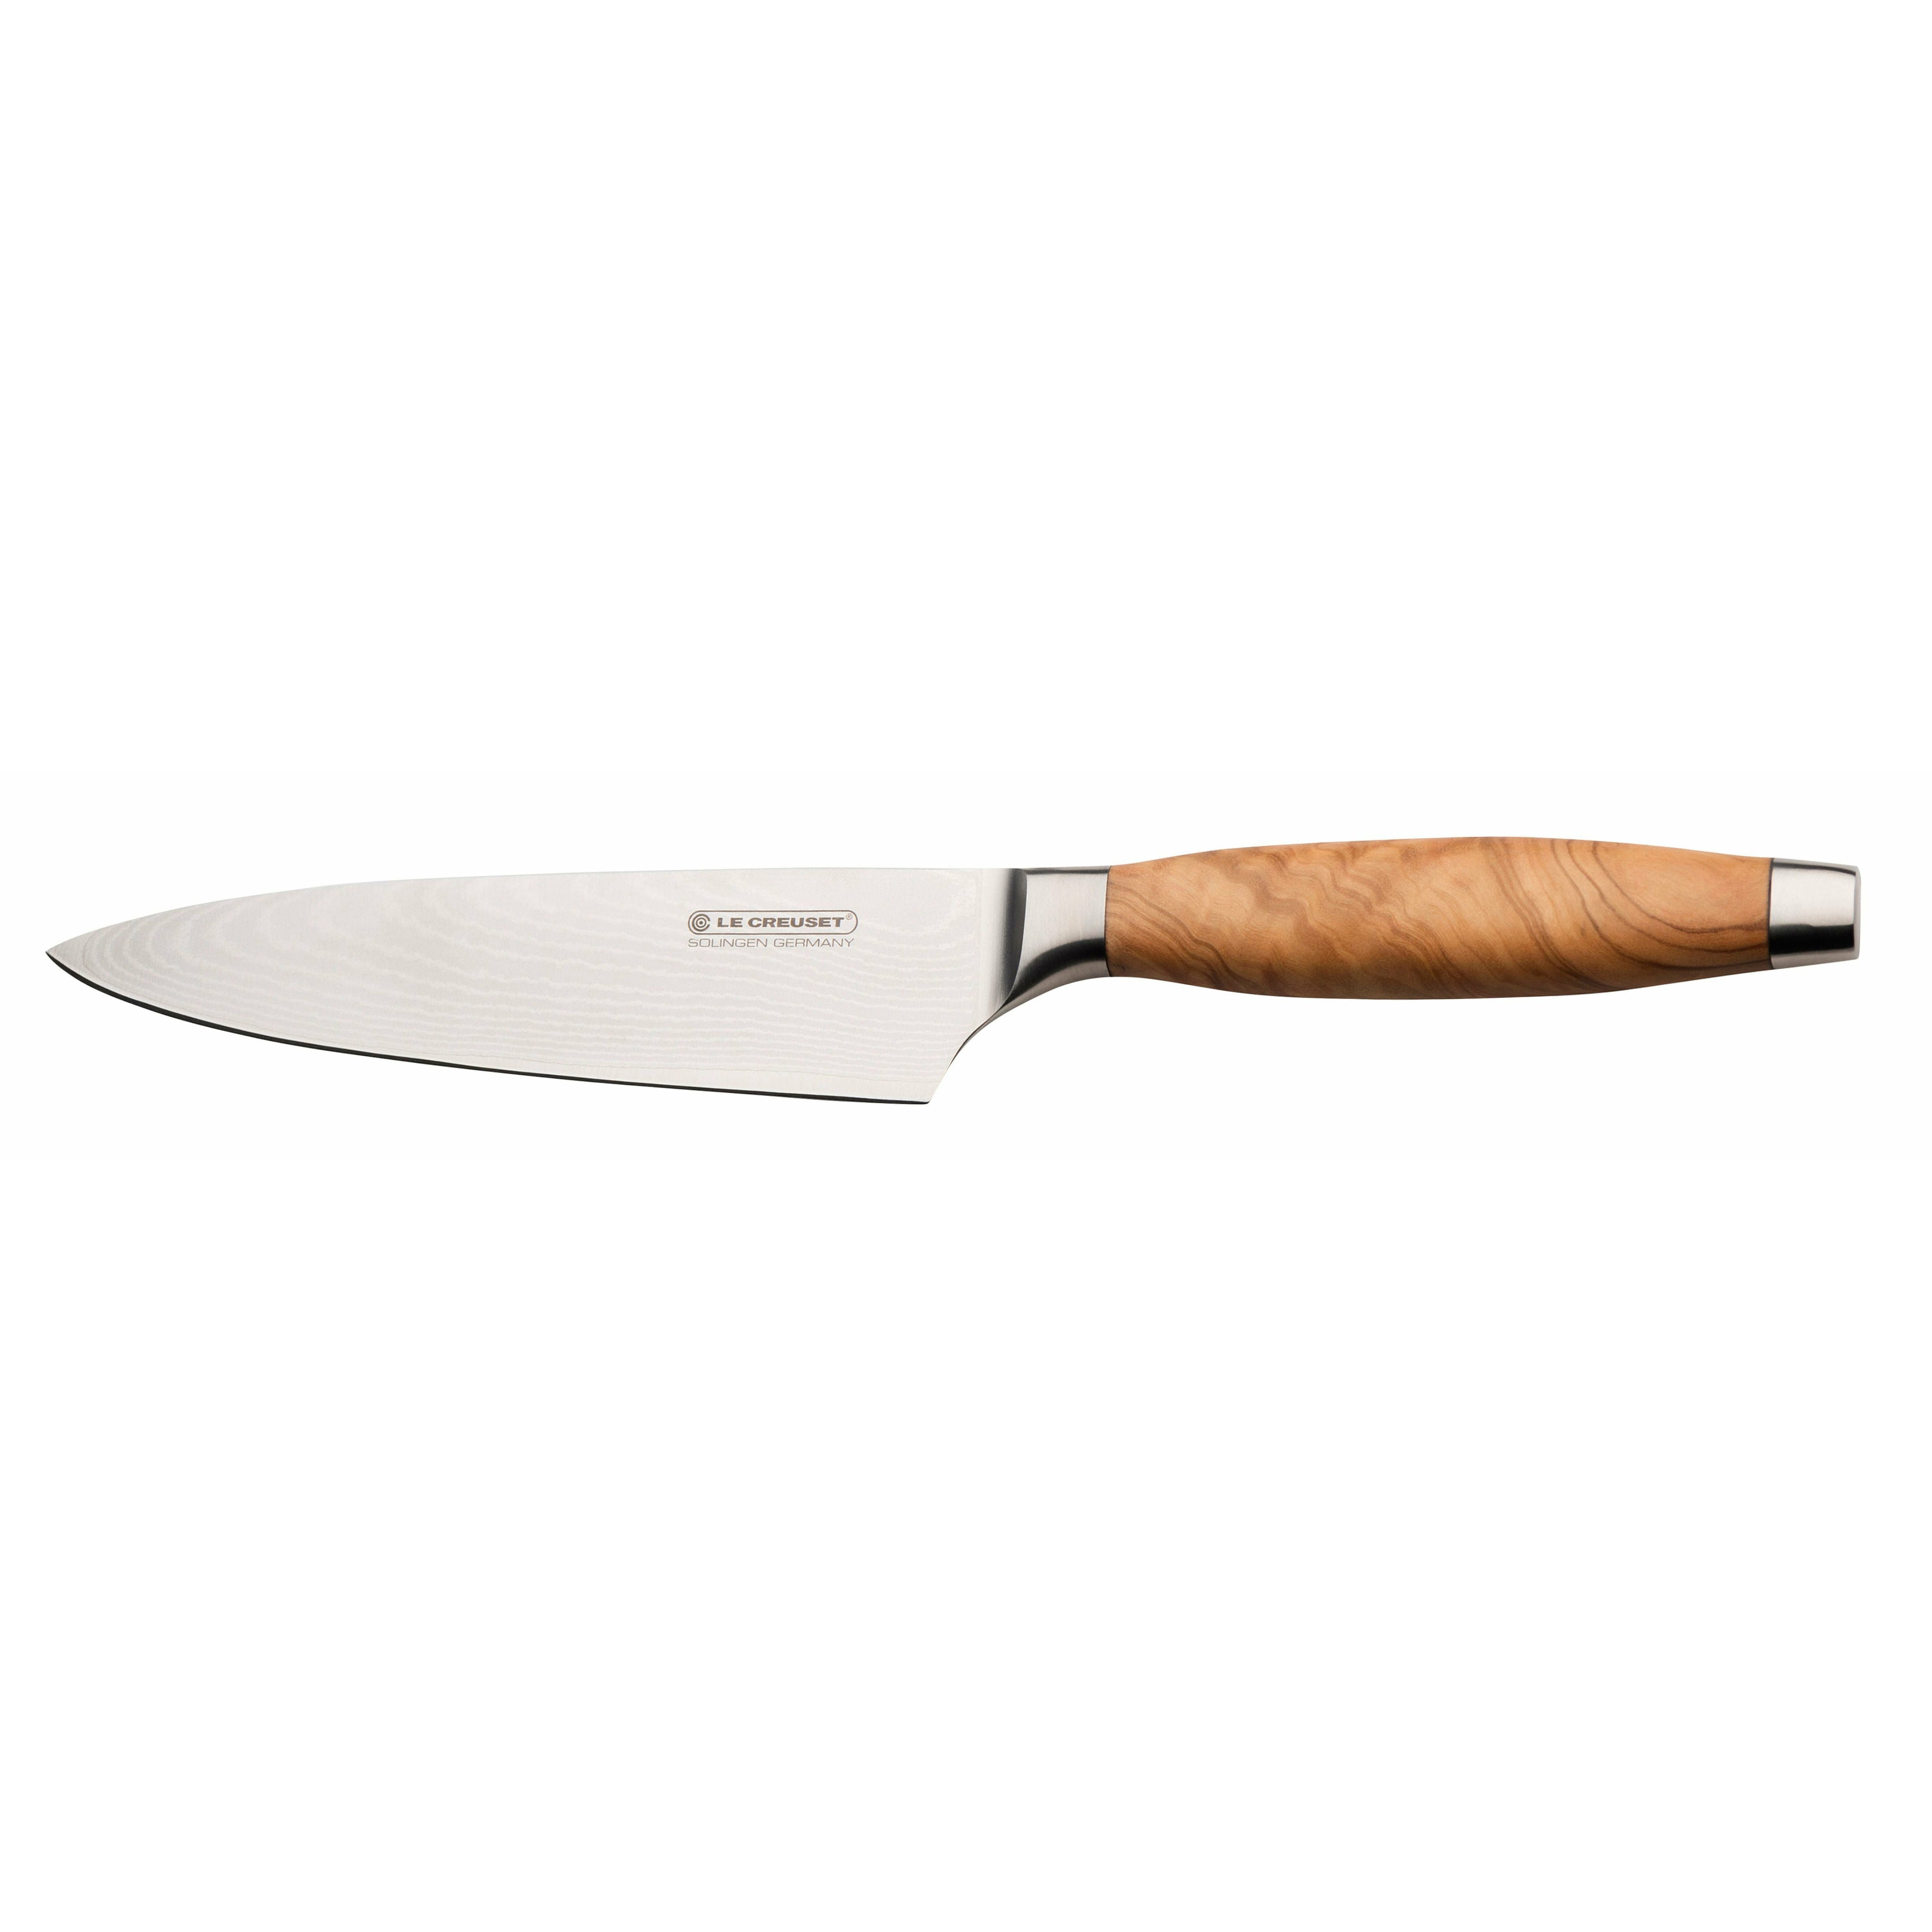 Mango de madera de oliva cuchillo de chef de le Creuset, 15 cm